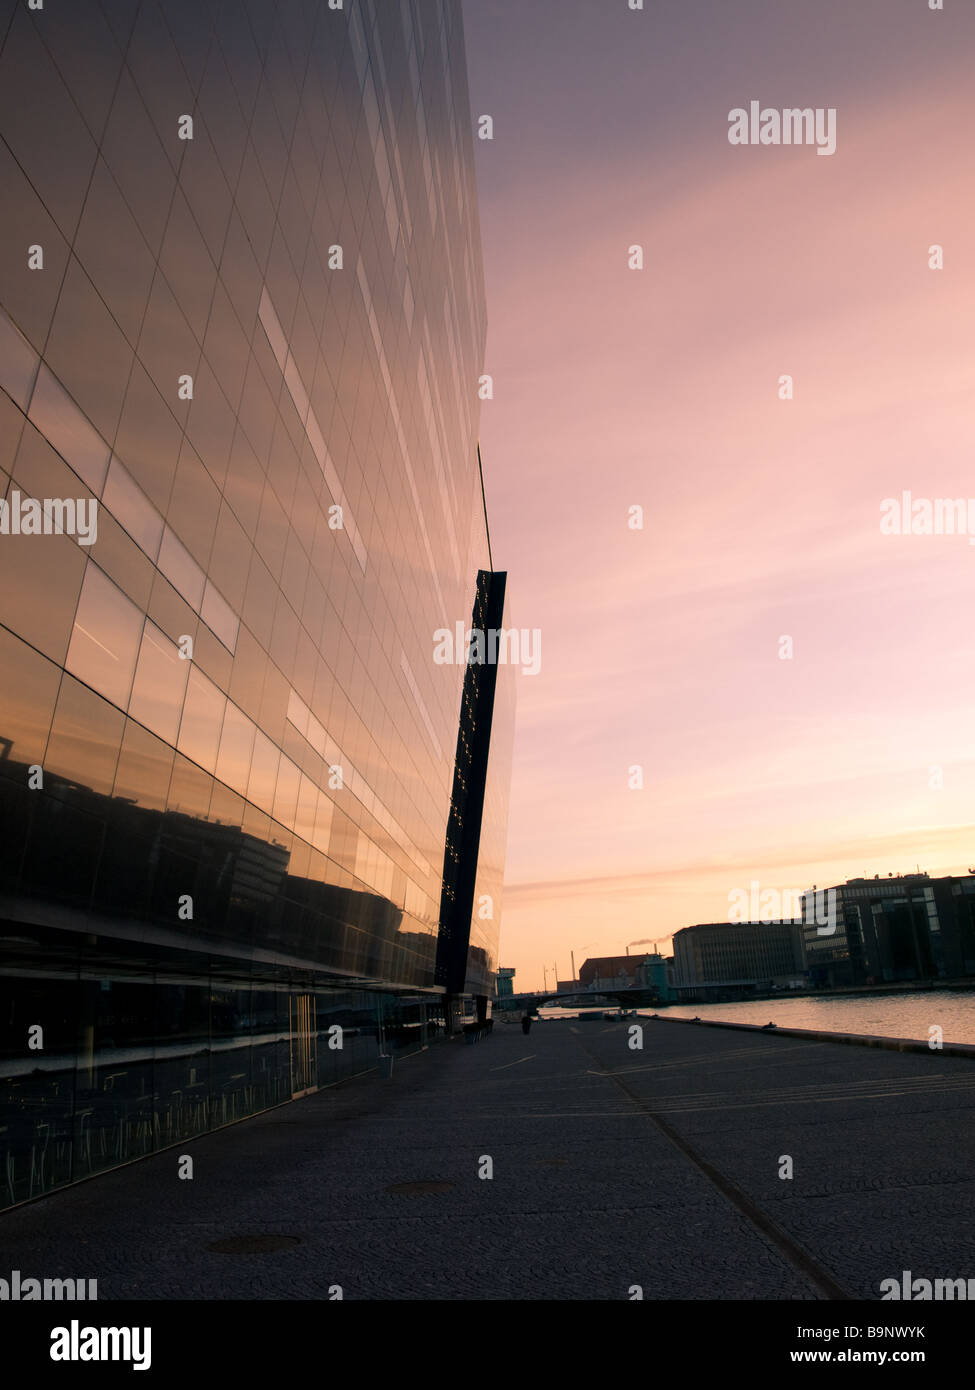 Sonnenaufgang in Kopenhagen, Dänemark.  Die königliche Bibliothek (Black Diamond) Türme auf der linken Seite in den Morgenhimmel. Stockfoto